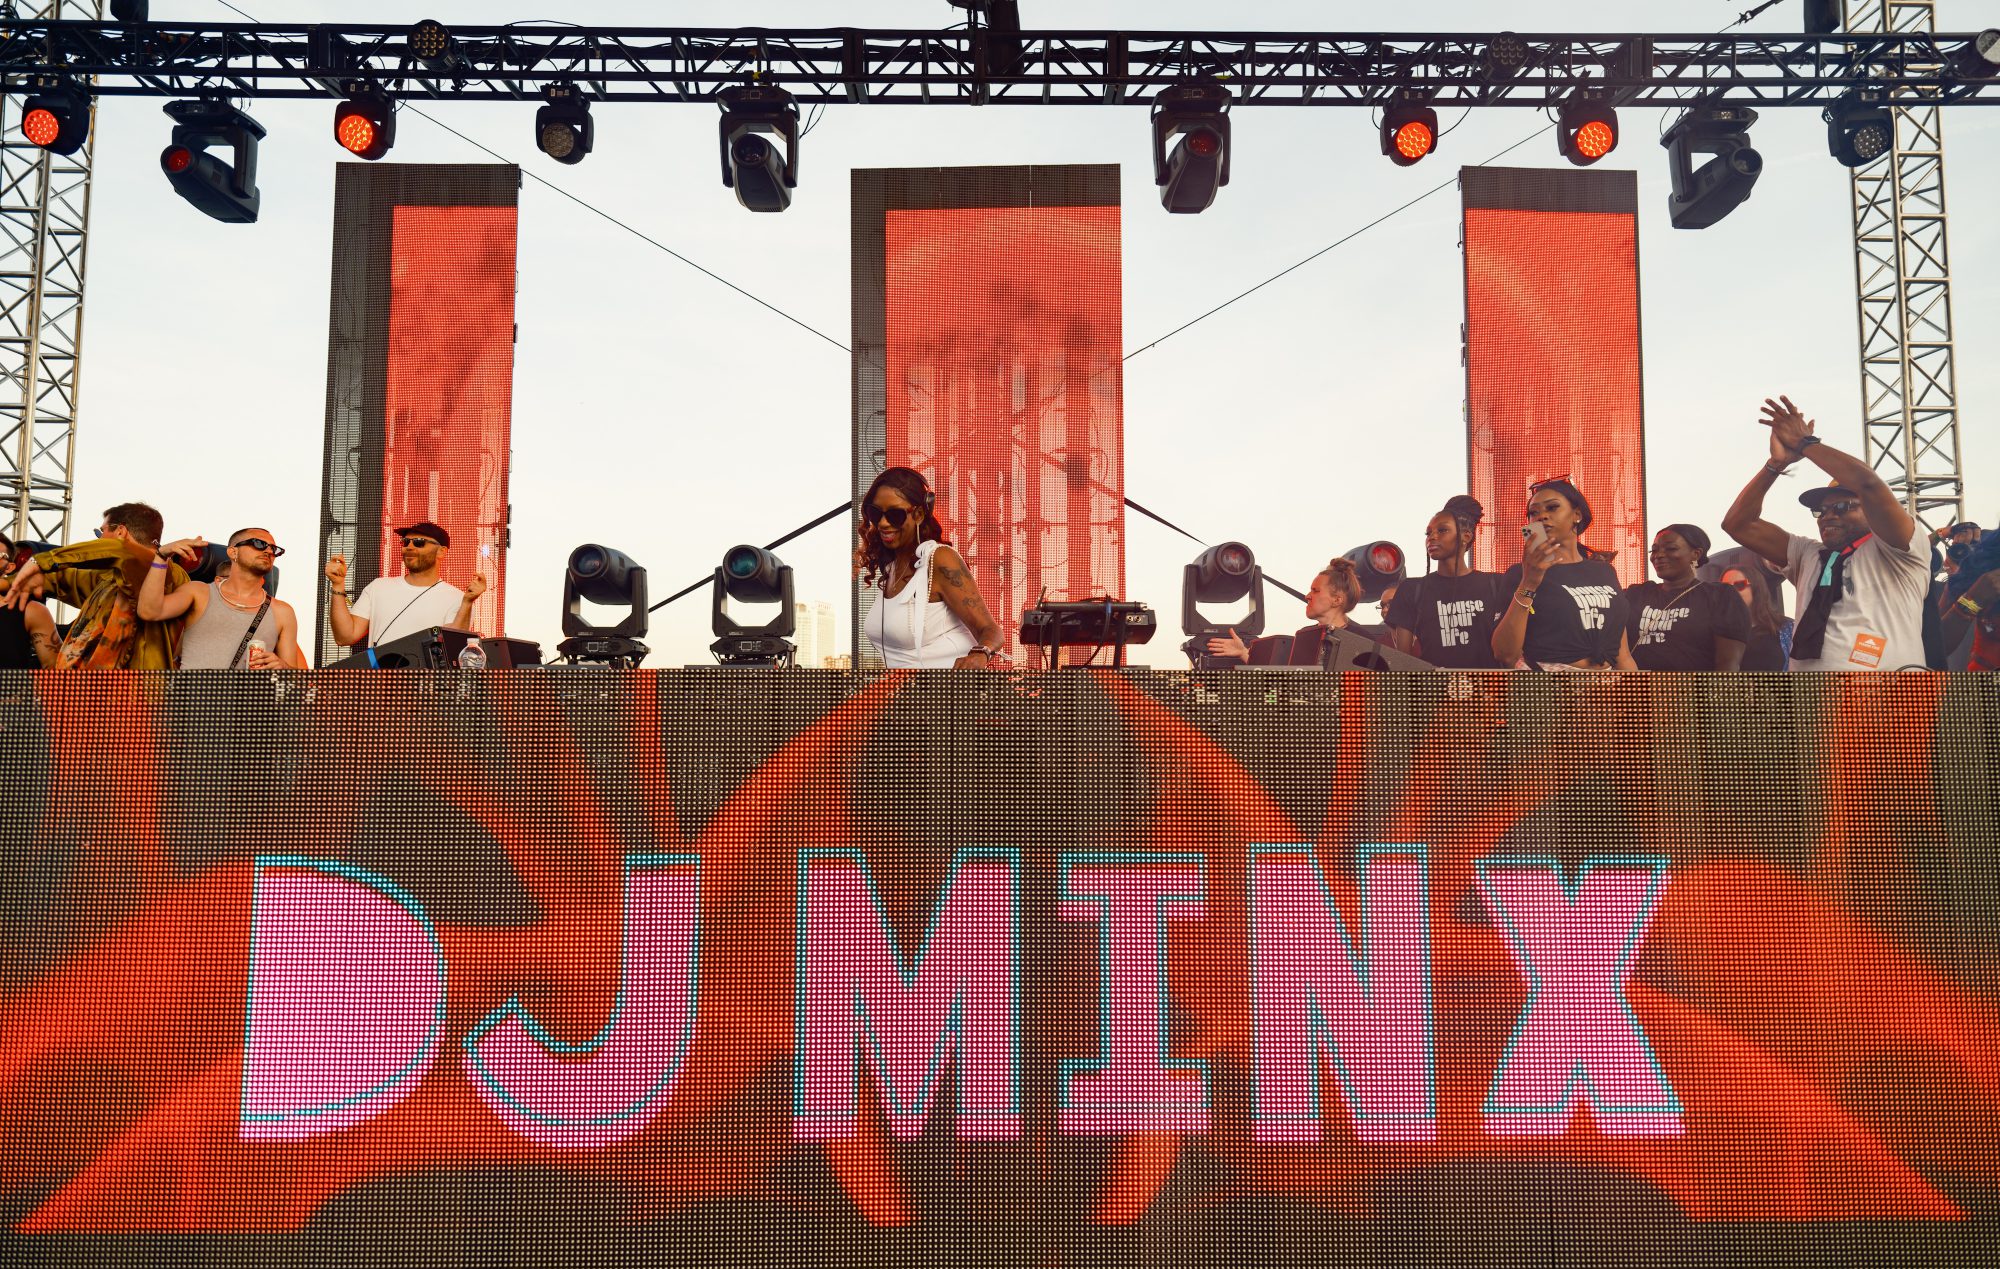 DJ Minx on Pyramid Stage | Photo Credit: Doug Wojciechowski @doug.wojciechowski